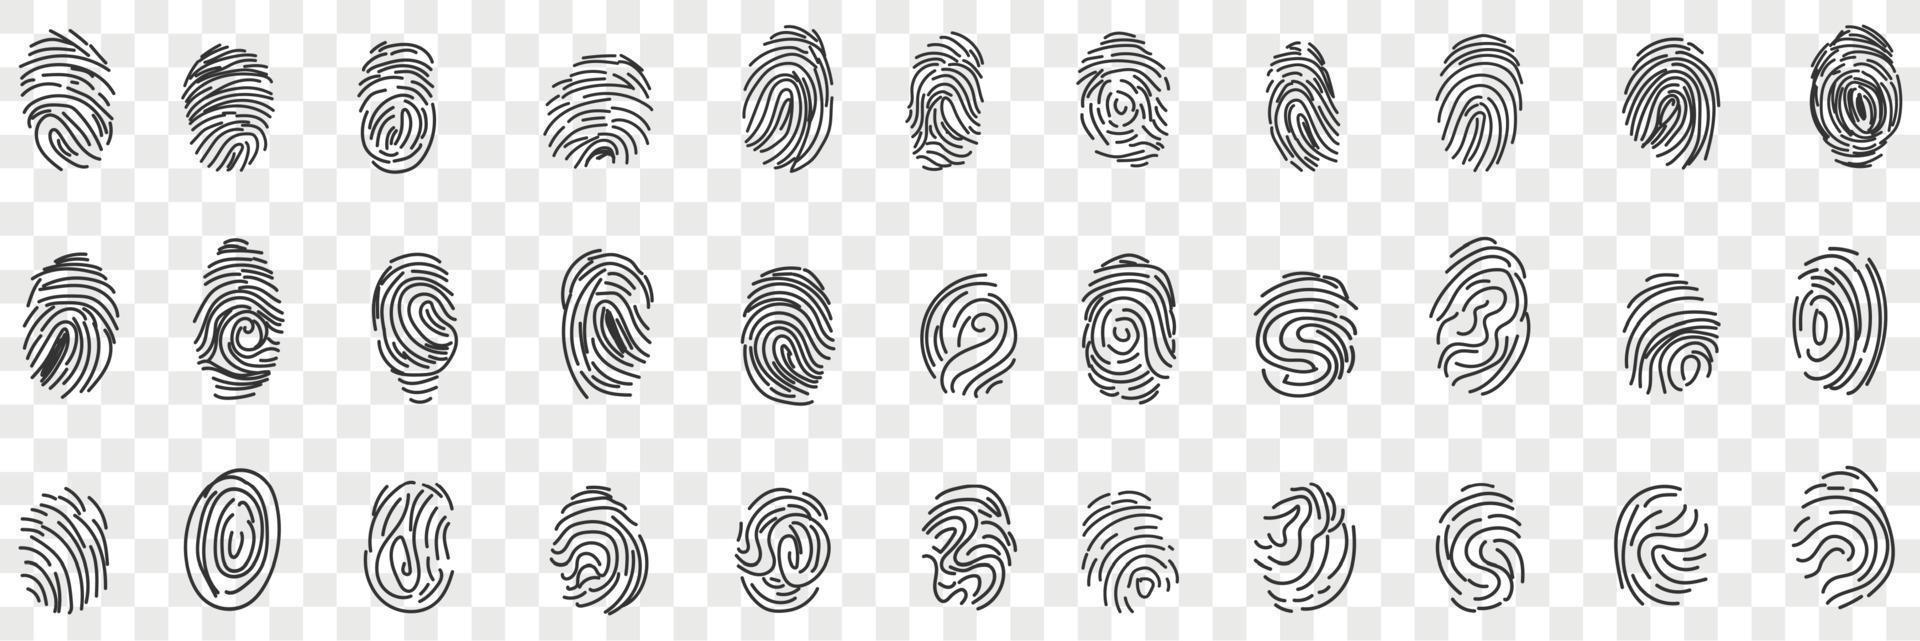 le impronte digitali personale identità scarabocchio impostare. collezione di mano disegnato vario umano le impronte digitali per identificazione persona o passaporto identificazione o in viaggio isolato su trasparente sfondo vettore